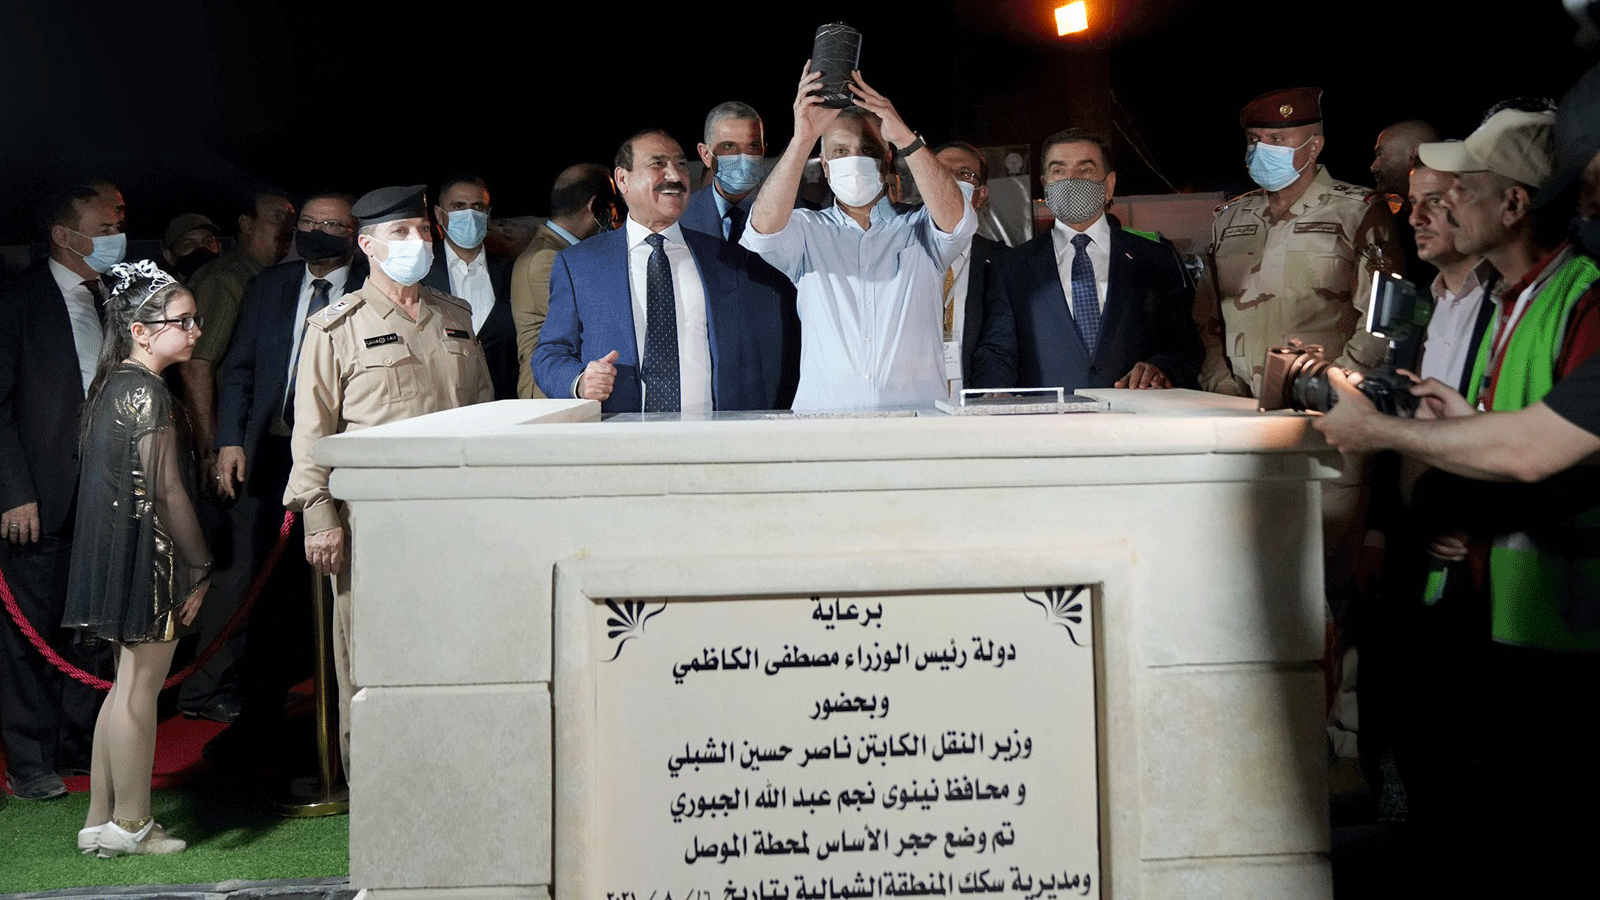  الكاظمي يضع حجر الاساس لمحطة قطار الموصل مساء الاثنين 16 آب/ أغسطس 2021 (صورة من إعلام رئاسة الحكومة العراقية)